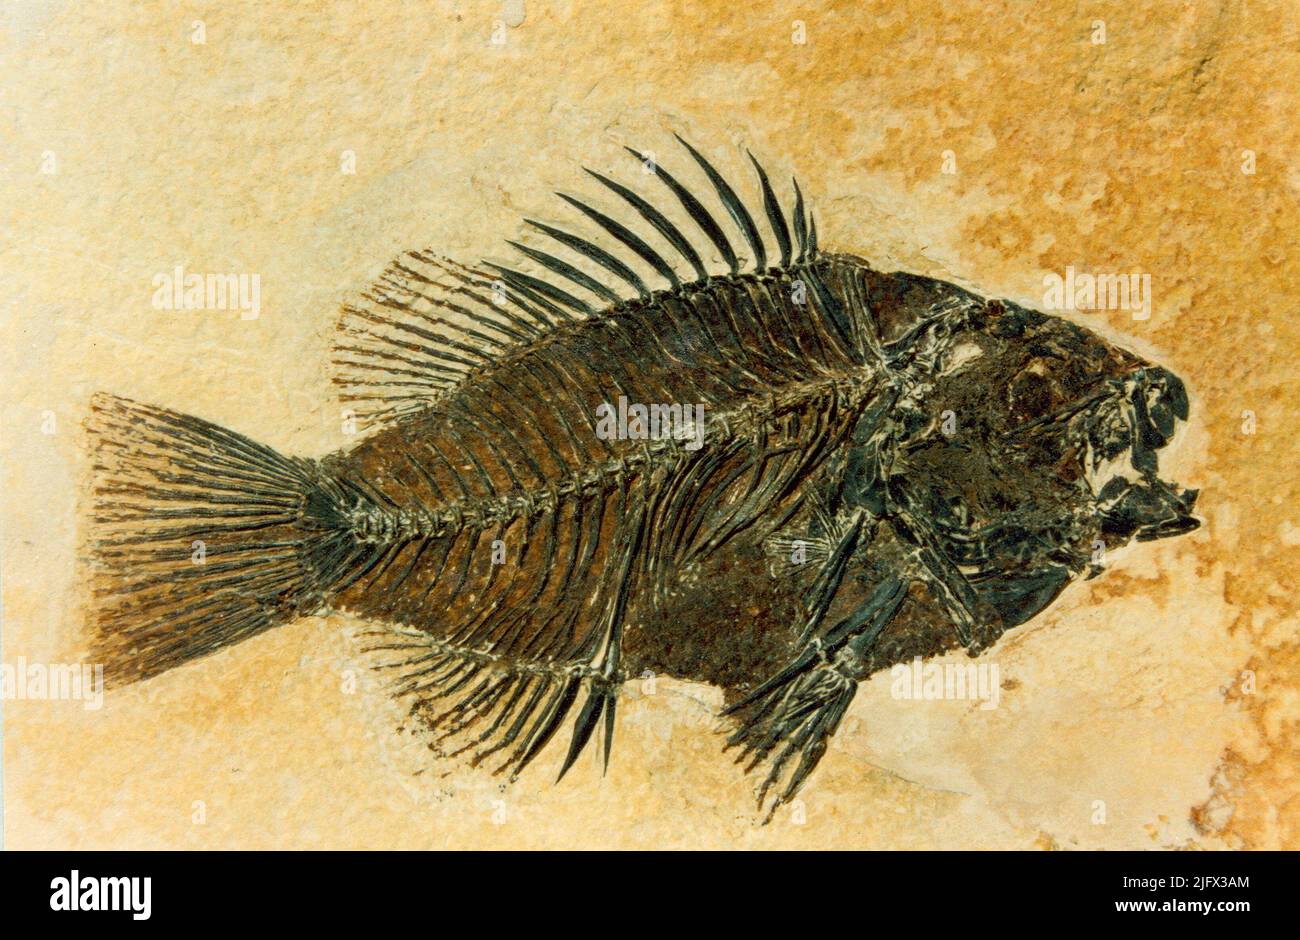 Eocene Sunfish. Un fossile Priscacara preparato, di un pesce solare Eocene tardo-precoce. Il campione è di circa il 80% delle sue dimensioni naturali. Fu raccolta dalla formazione di Green River a 9 miglia ad ovest di Kemmerer, Wyoming nel 1984. Credito: USGS Foto Stock